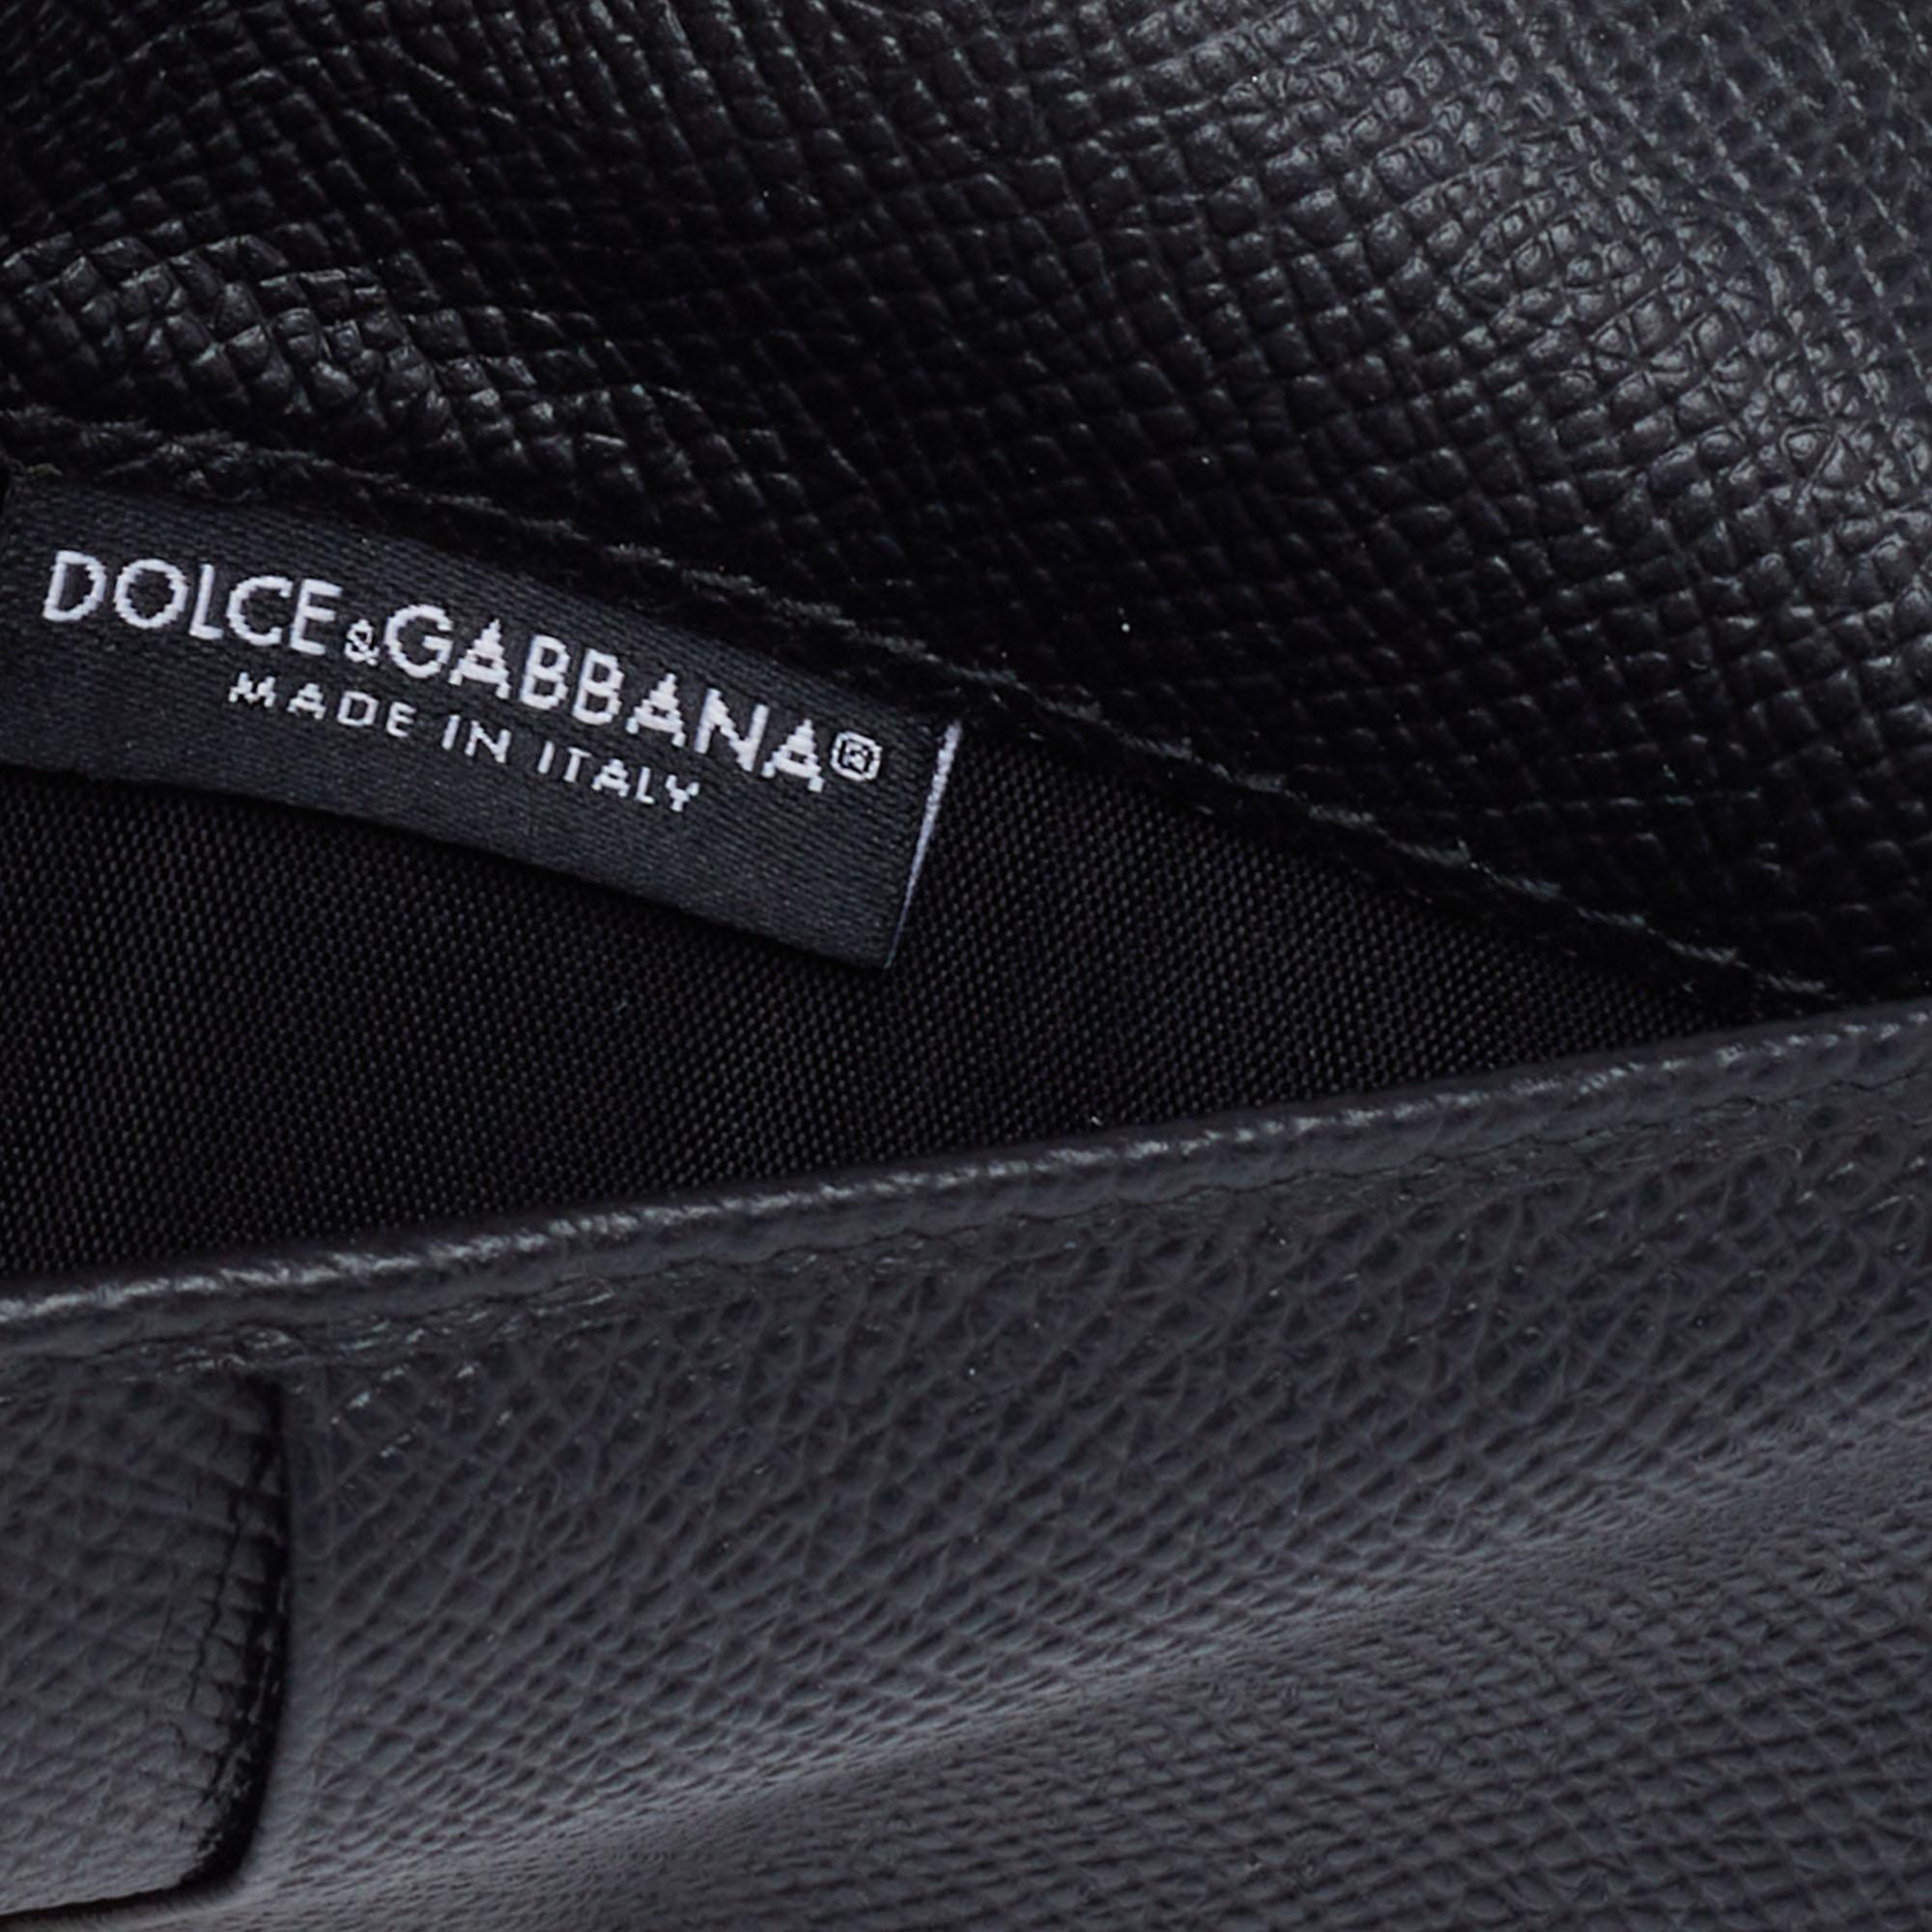 Dolce & Gabbana White/Black Polka Dot Leather Miss Sicily Von Wallet on Chain 4